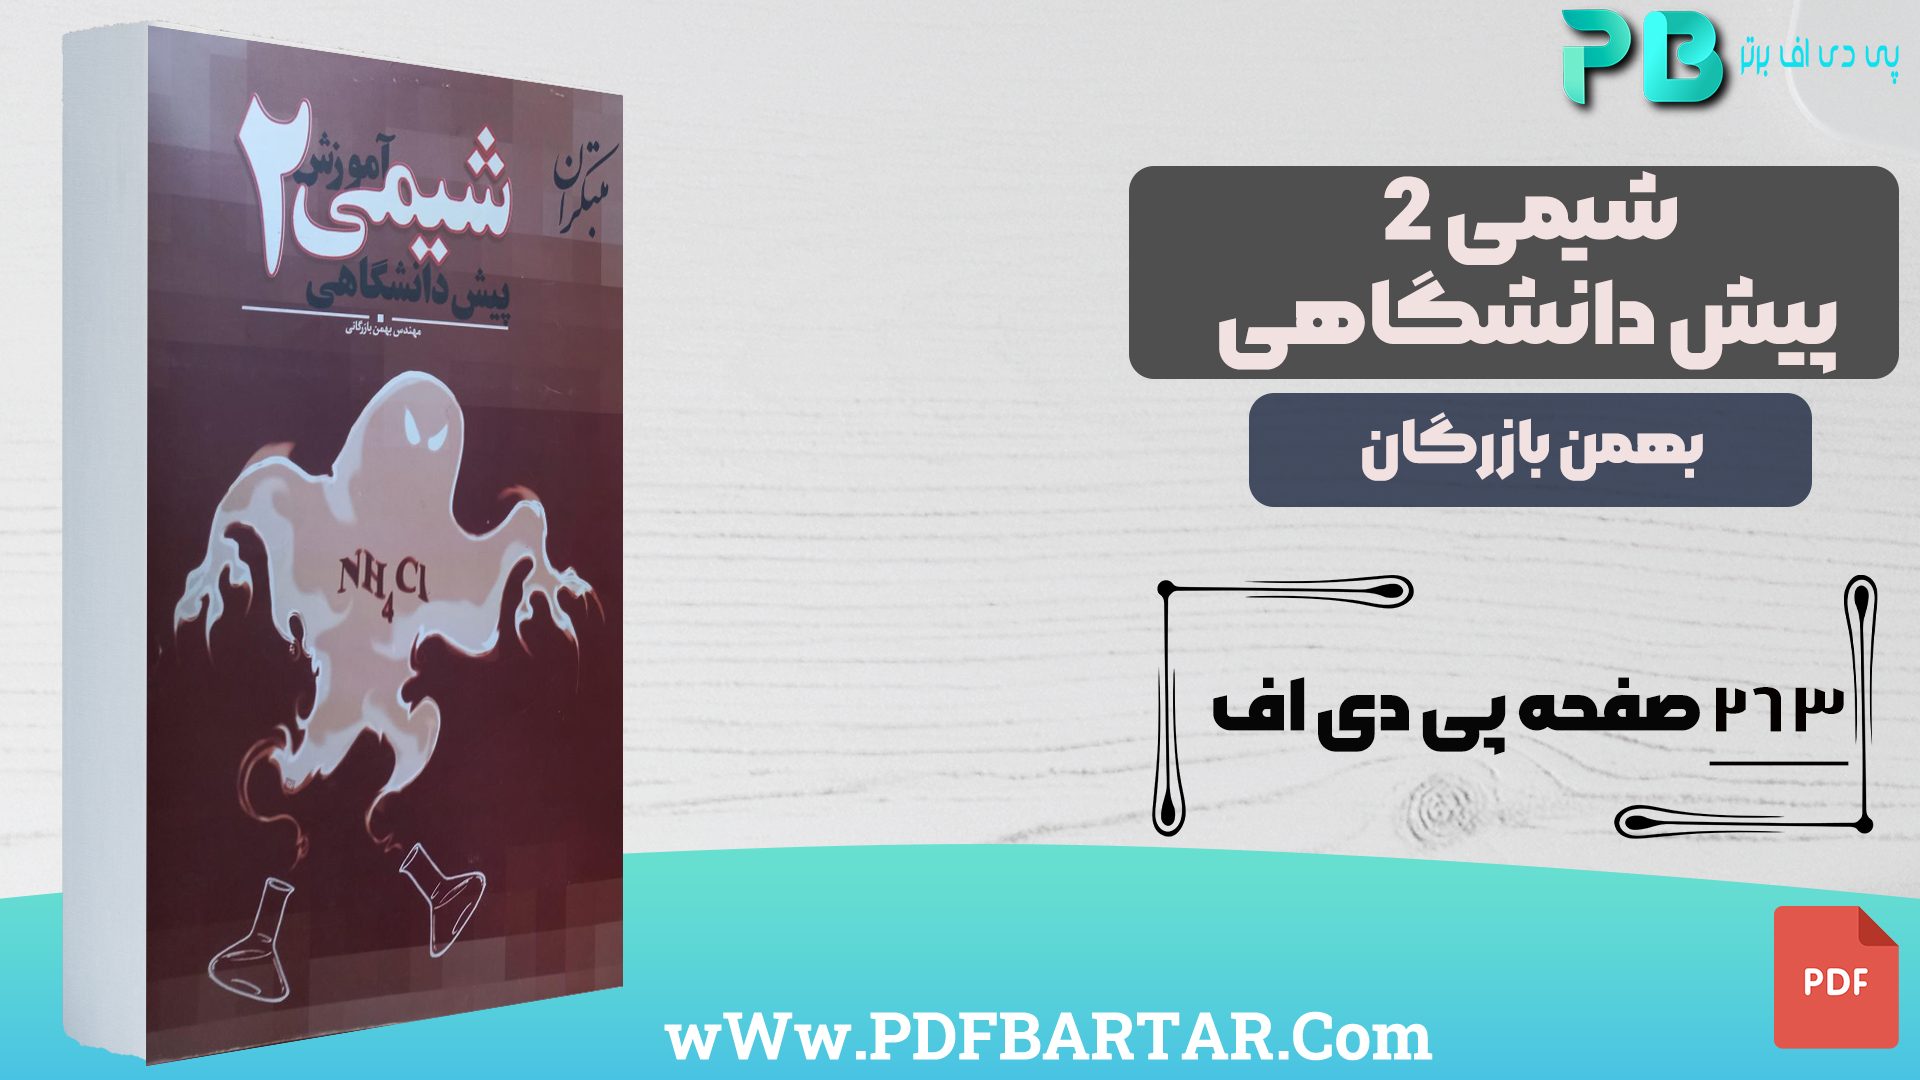 دانلود پی دی اف کتاب شیمی 2 پیش دانشگاهی بهمن بازرگان PDF